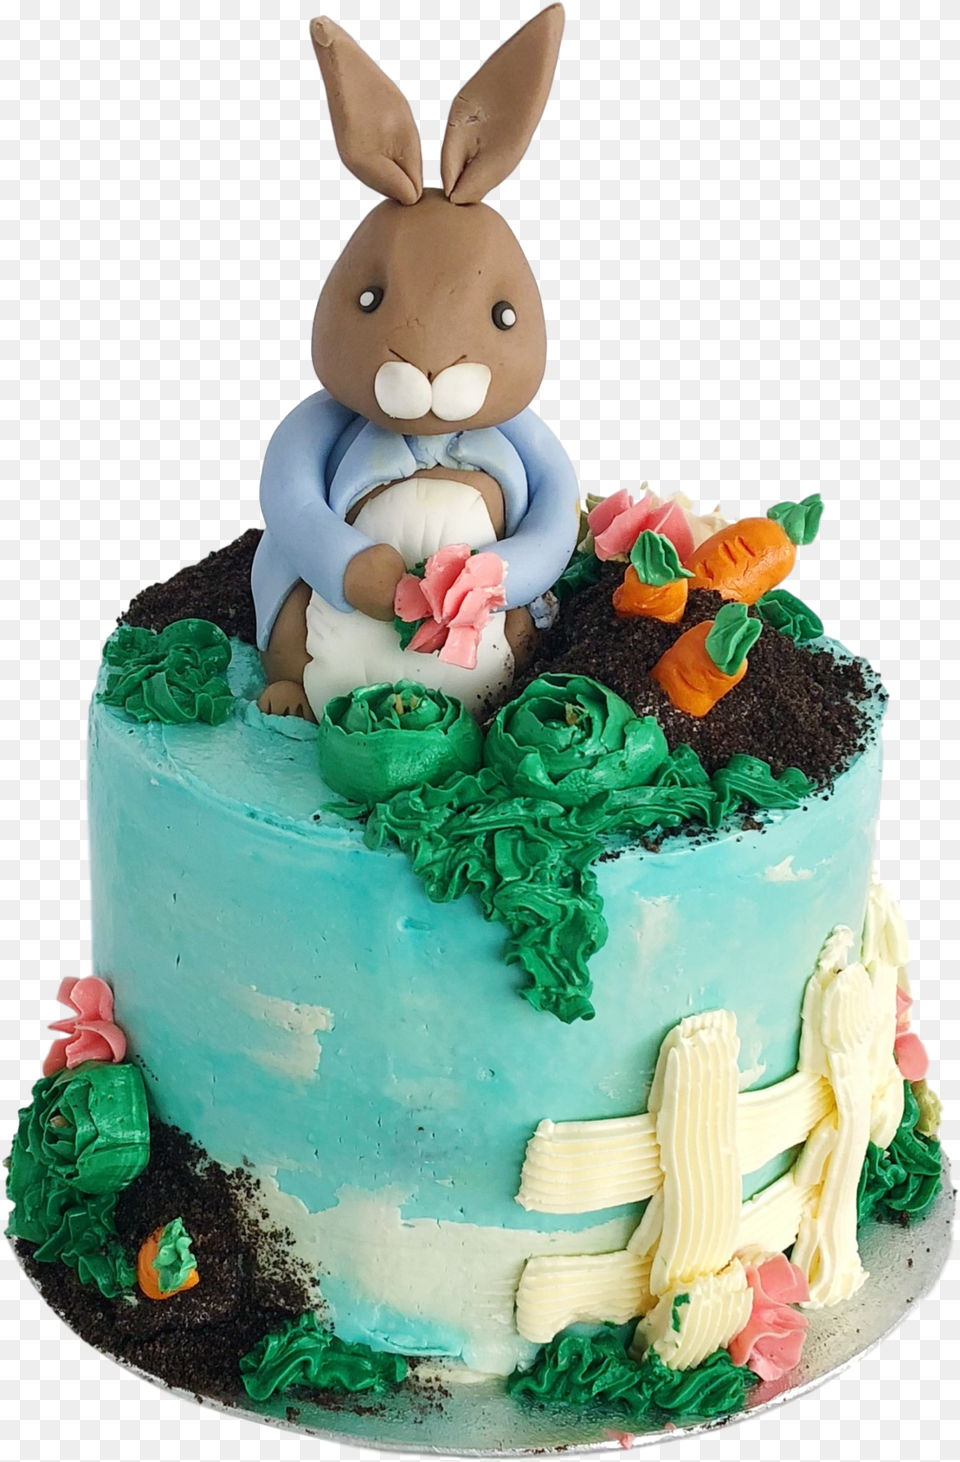 Peter Rabbit Cake Happy Birthday Cake Rabbit, Birthday Cake, Cream, Dessert, Food Png